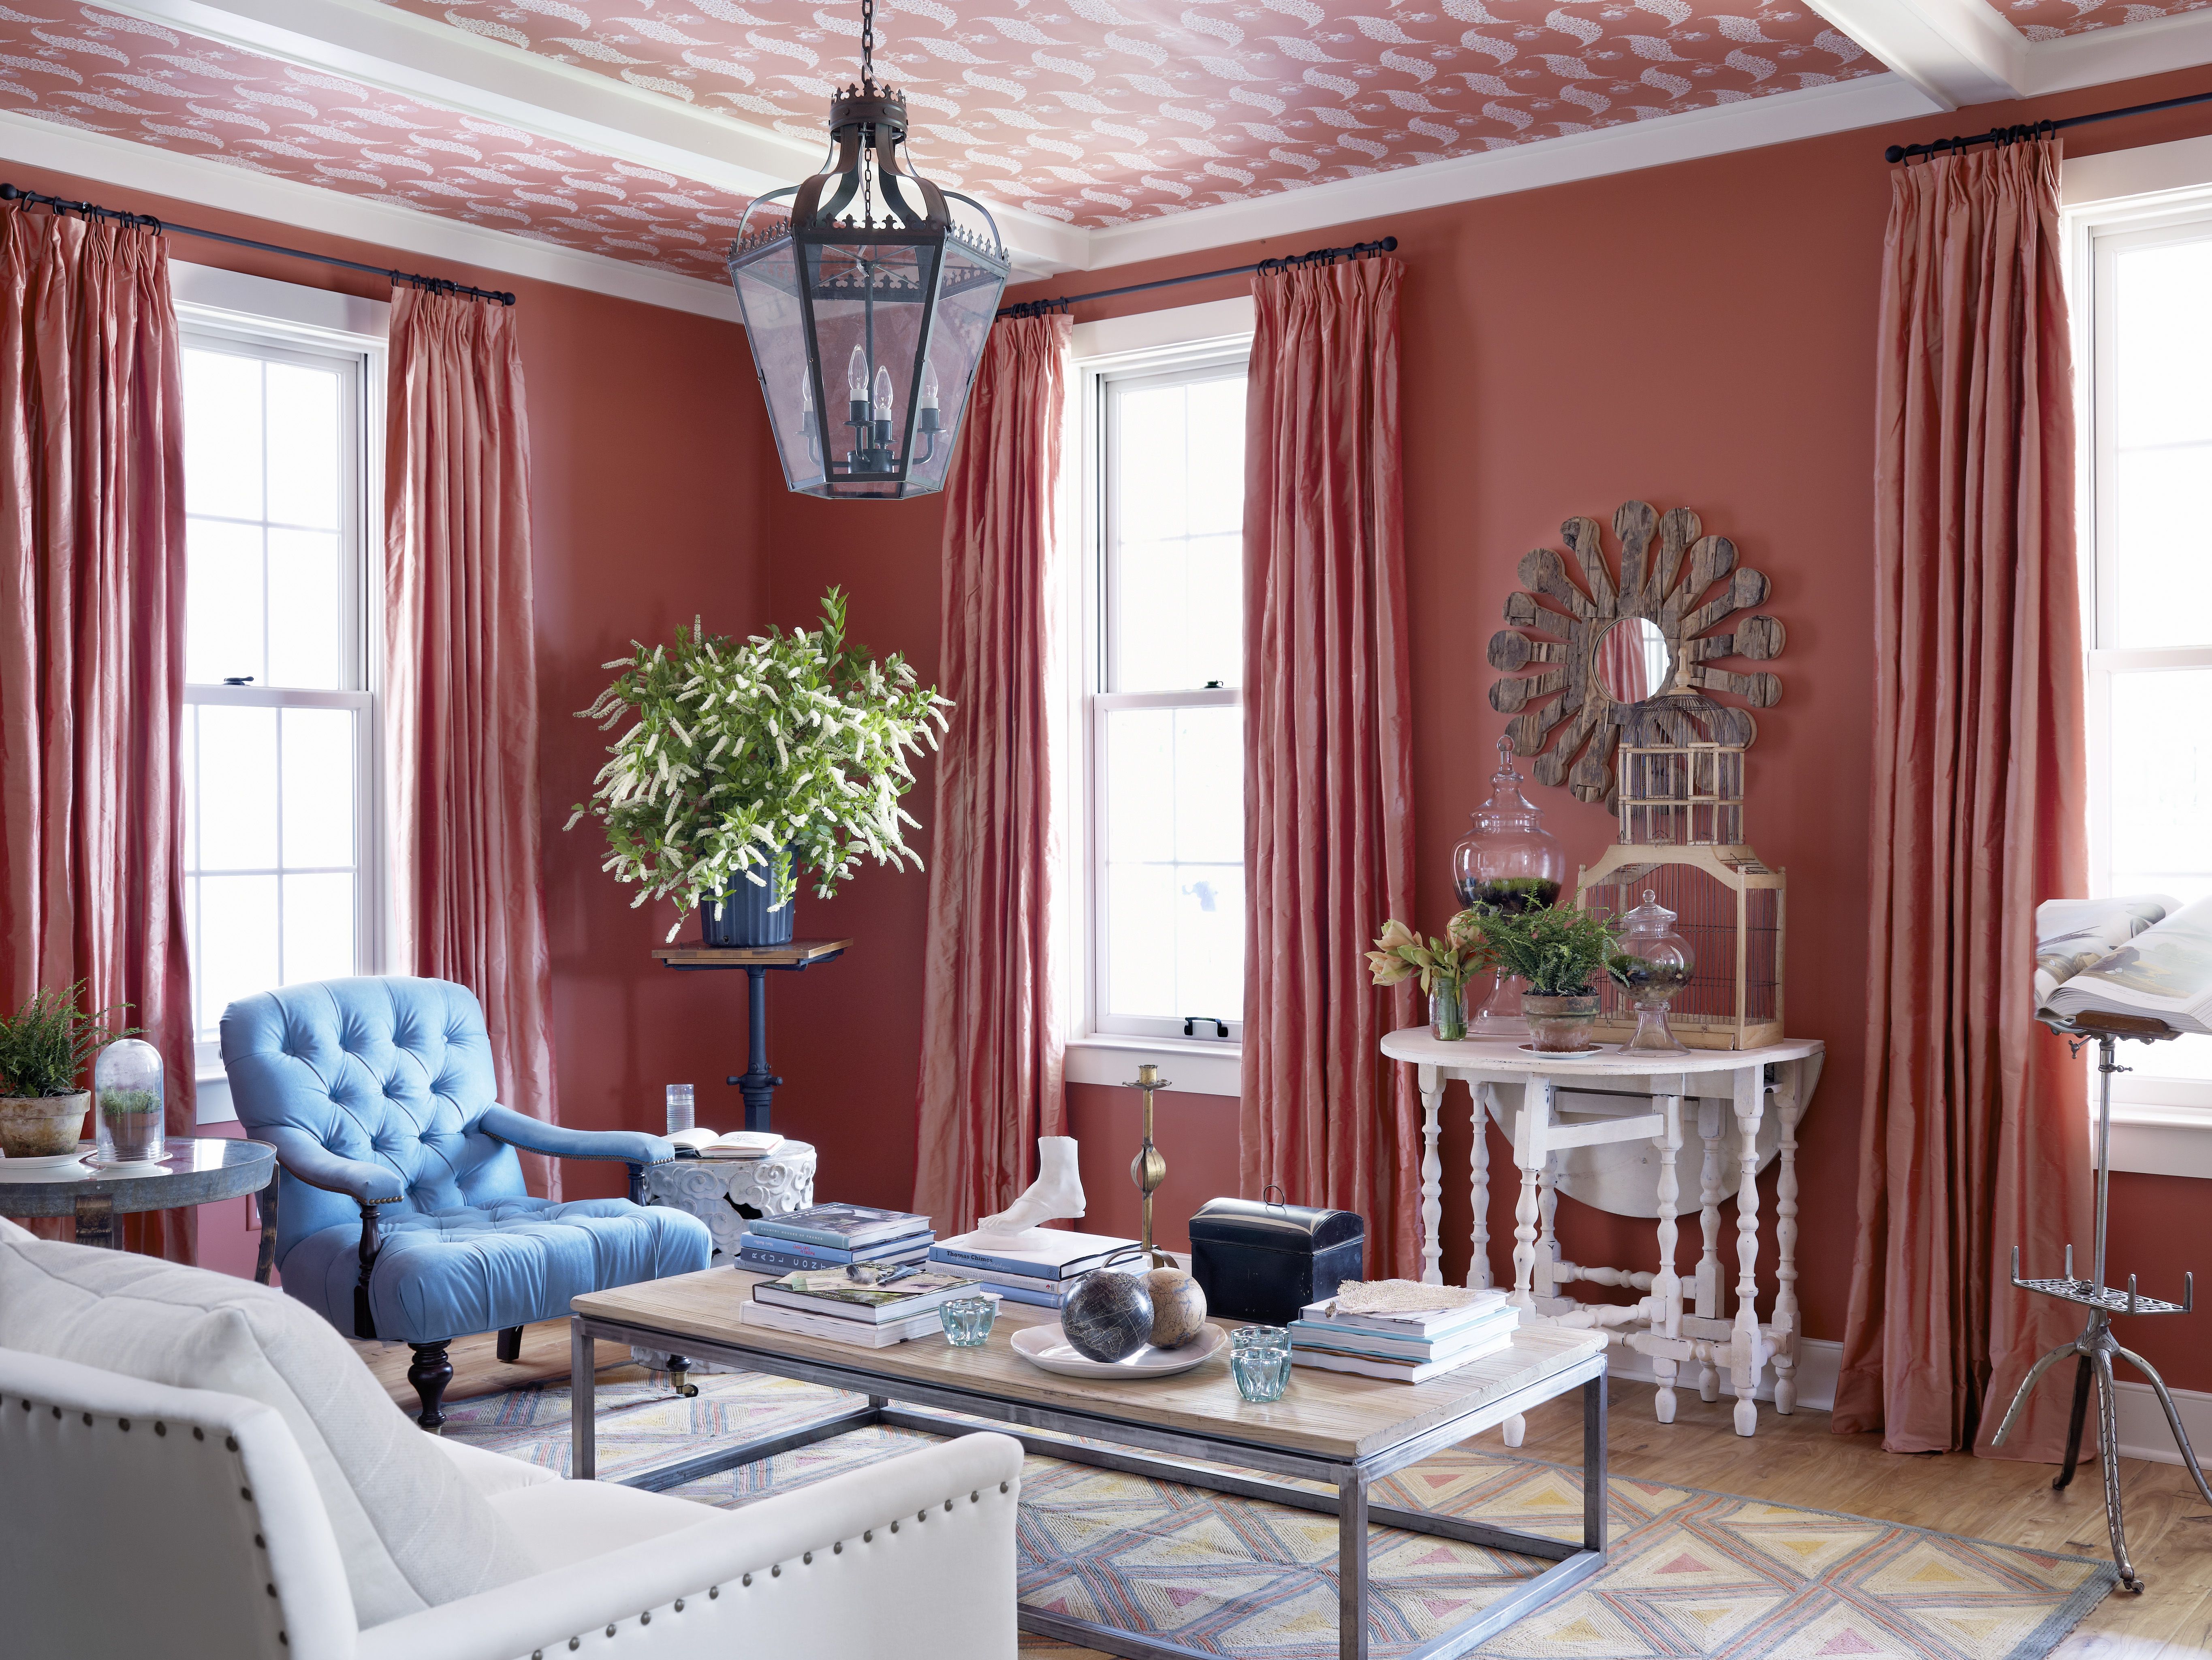 15 Best Living Room Paint Color Ideas - Top Living Room Paint Colors